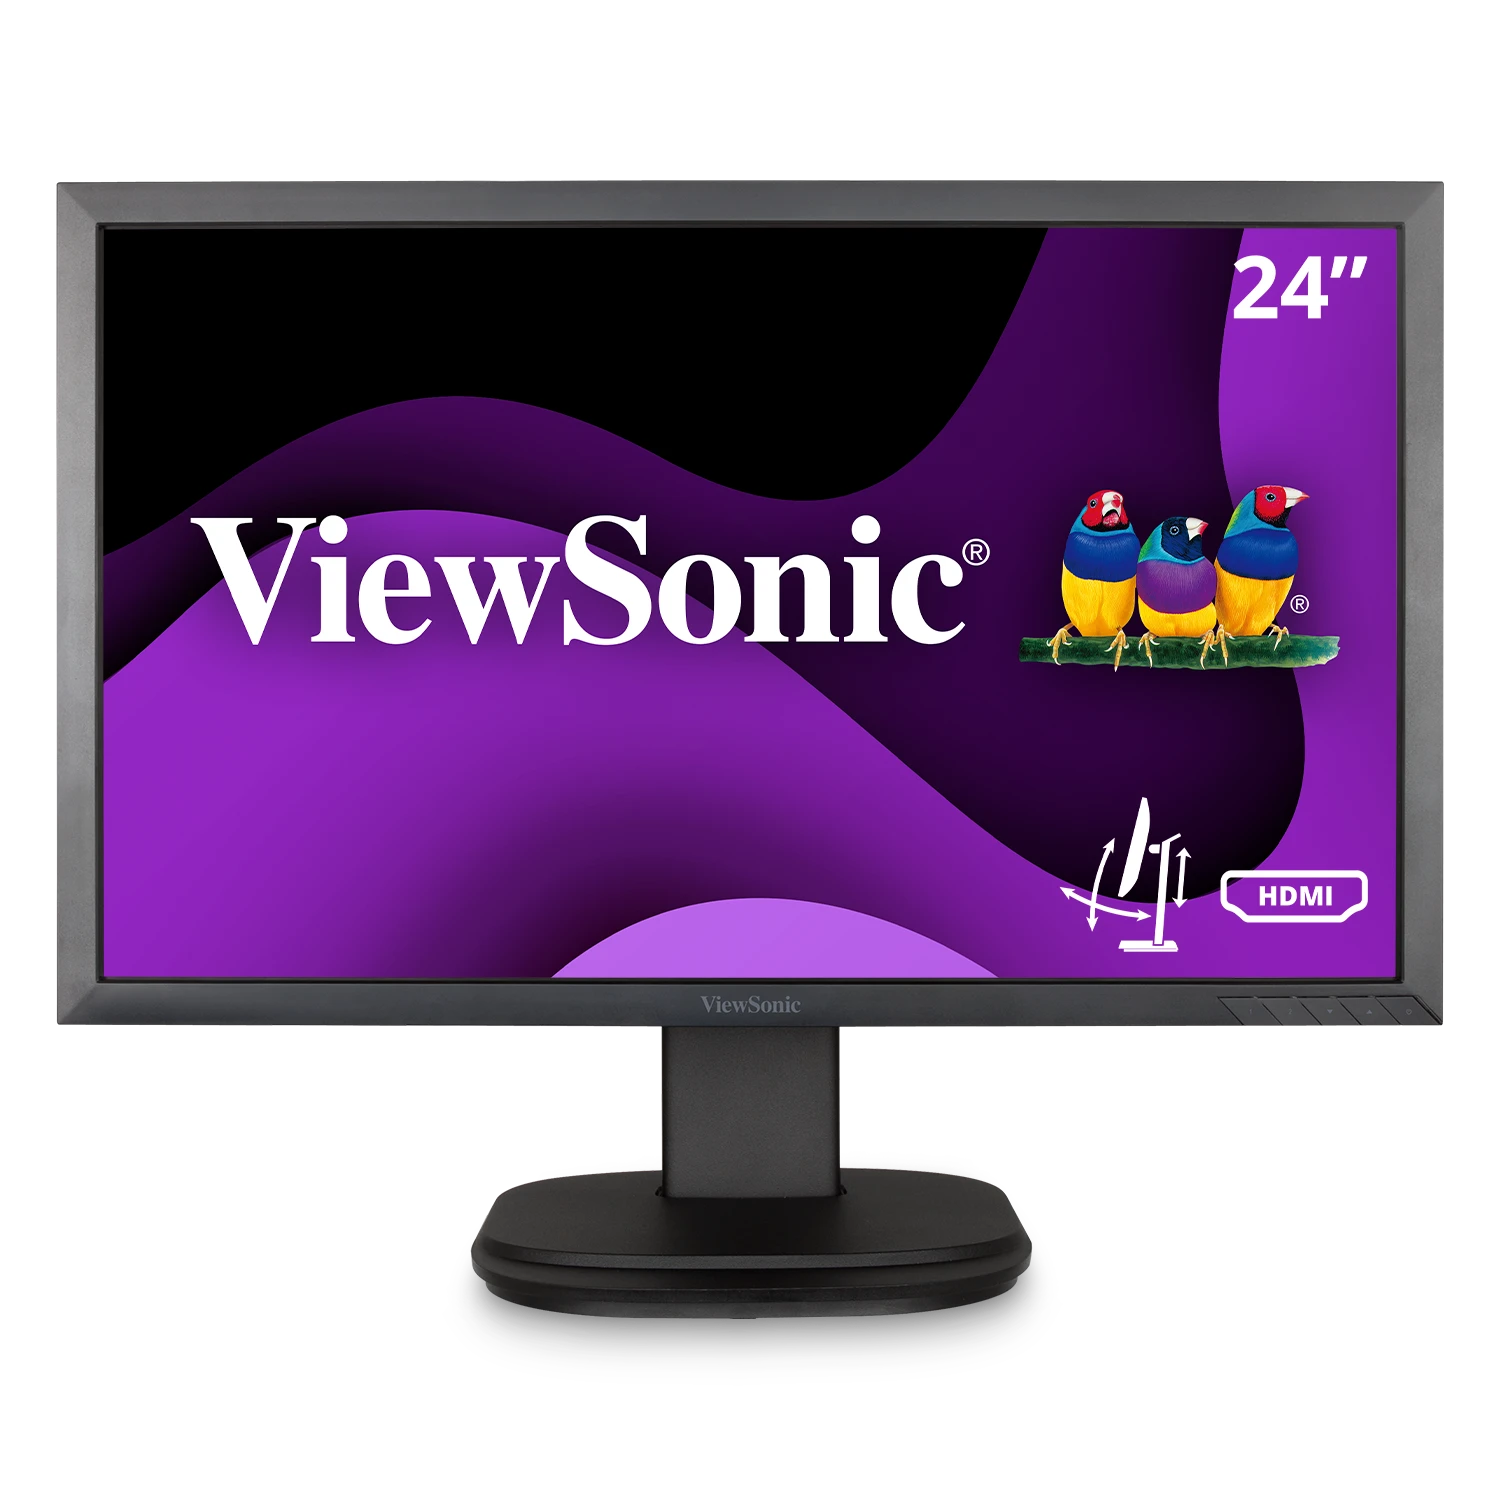 CoNputodo - 🖥️Monitor de 19 ViewSonic ☑️Nuevo en su caja. ☑️ es un monitor  panorámico de 19” (18,5” visibles). ☑️ equipado con tiempo de respuesta  rápida y rendimiento de color. ☑️es excelente